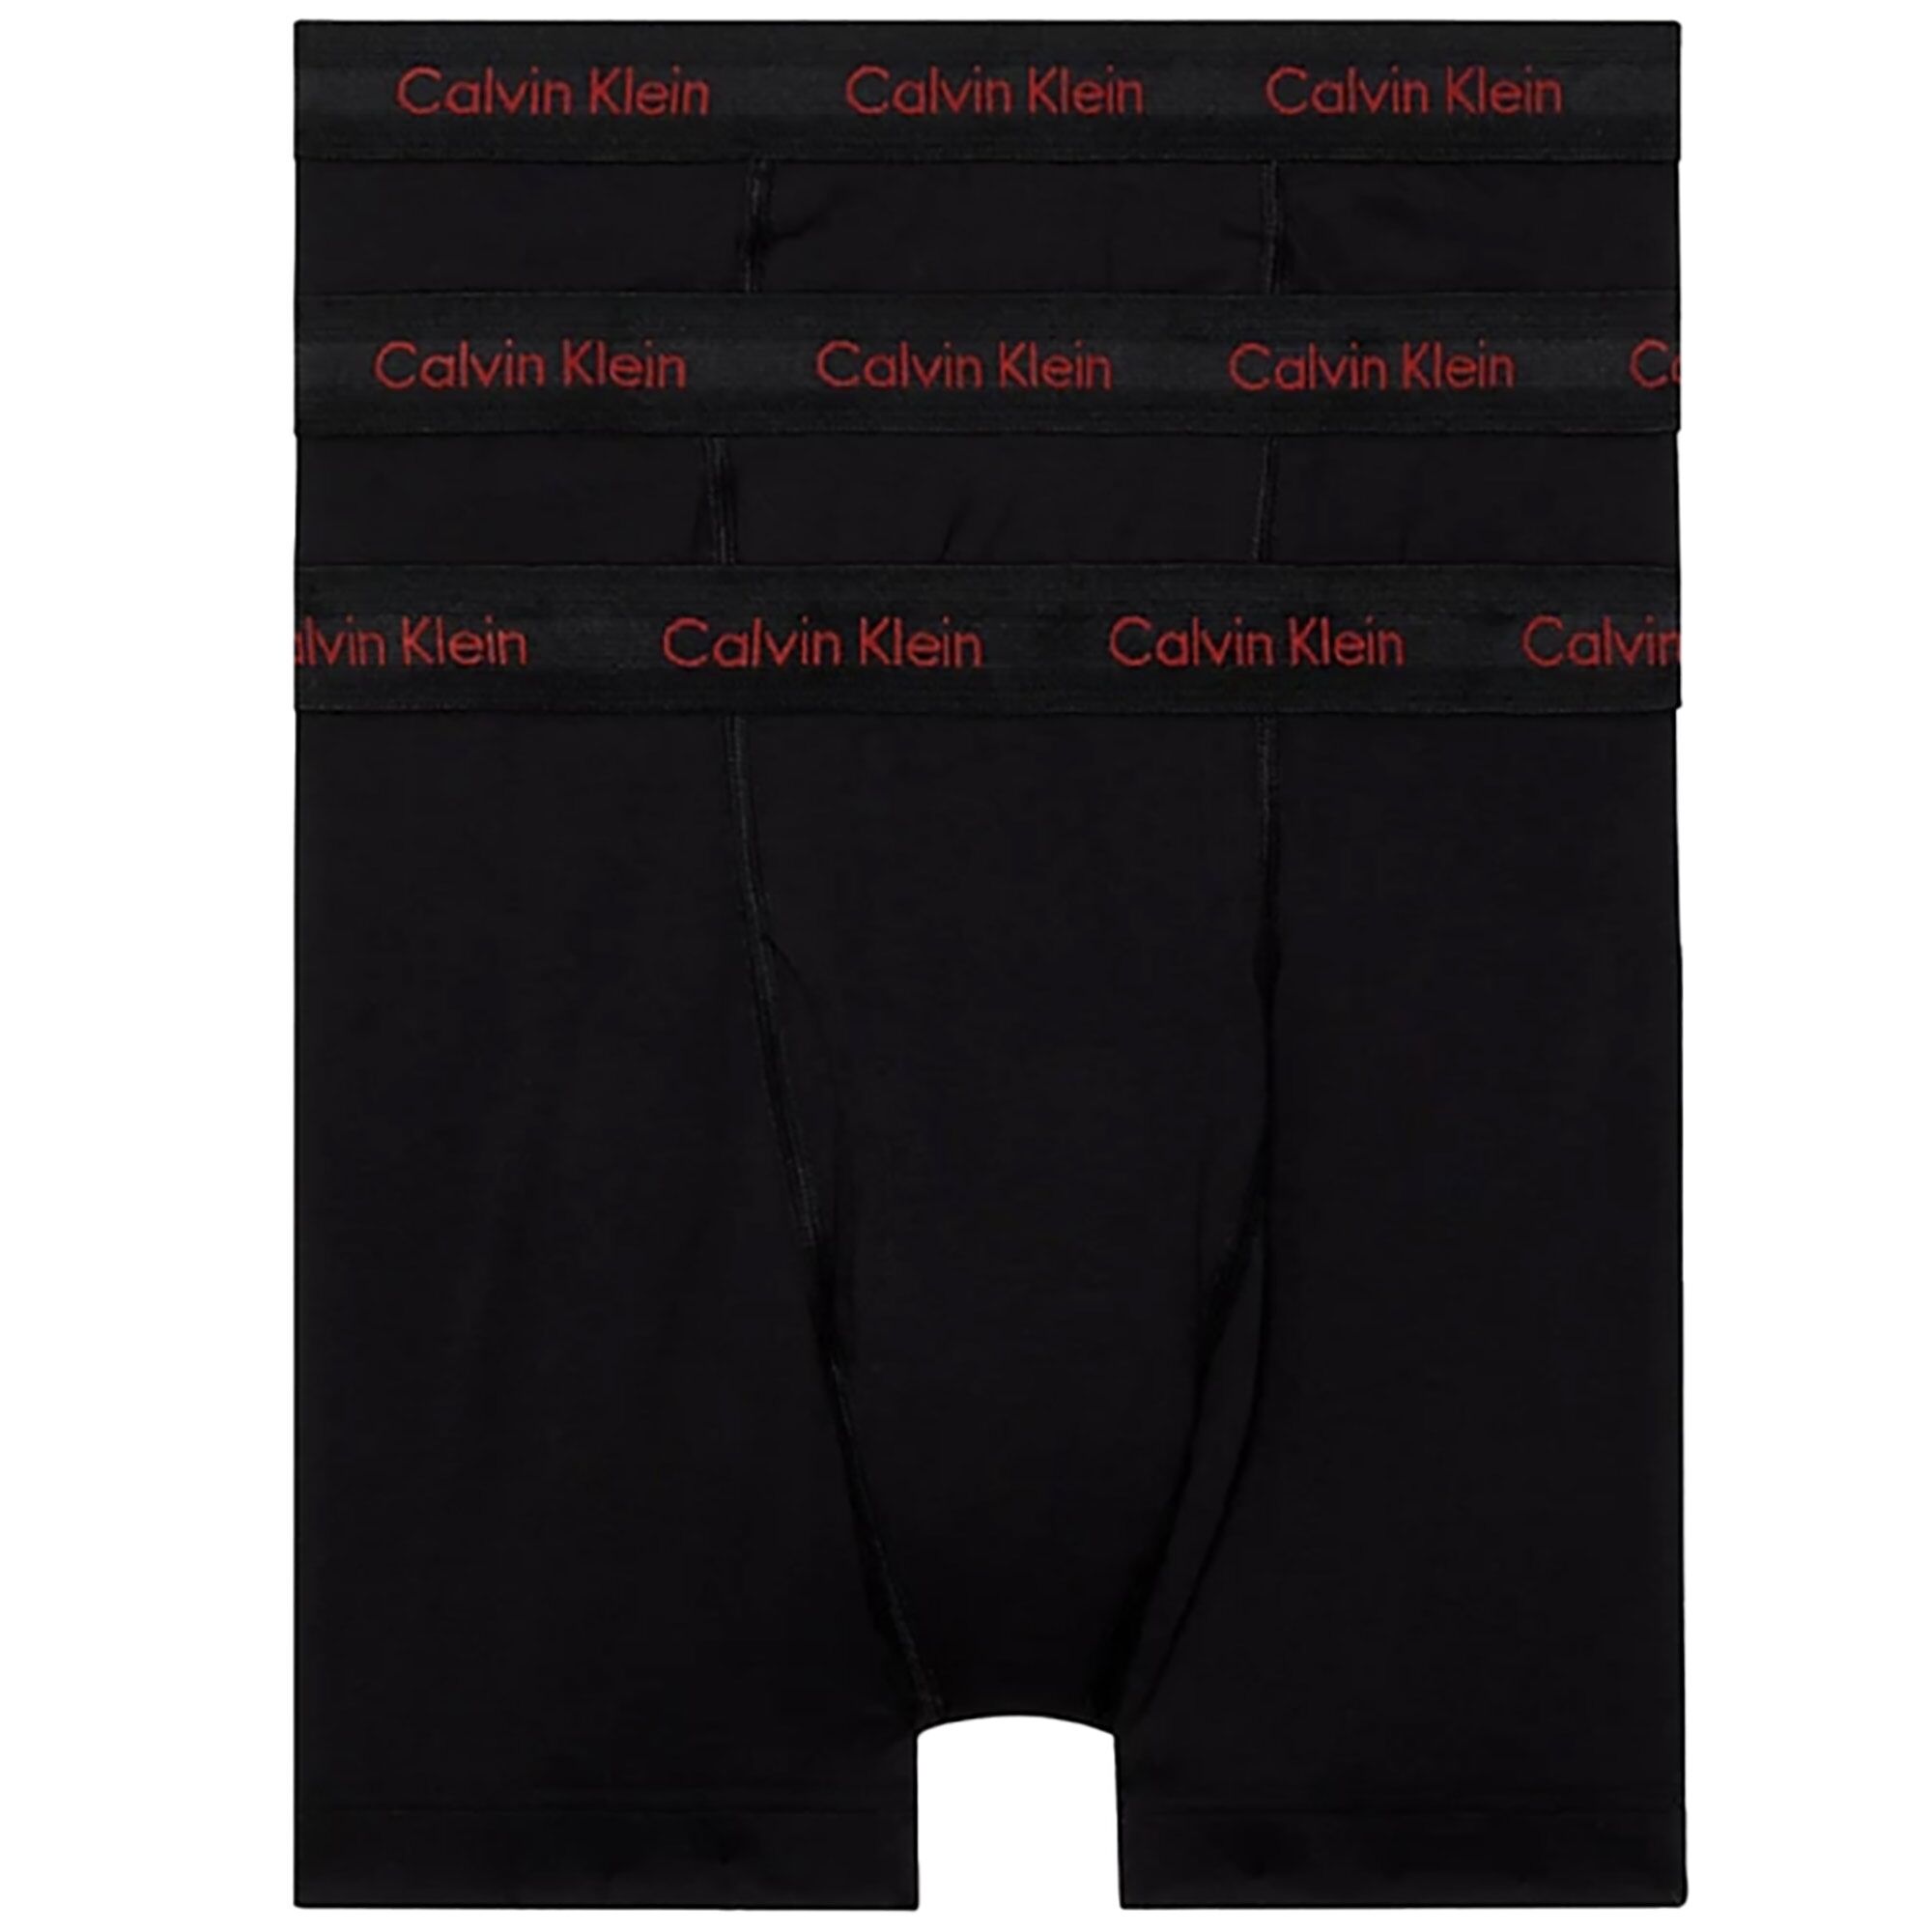 Calvin Klein Underwear 3 Pack Boxer Briefs - Black  - Size: Large